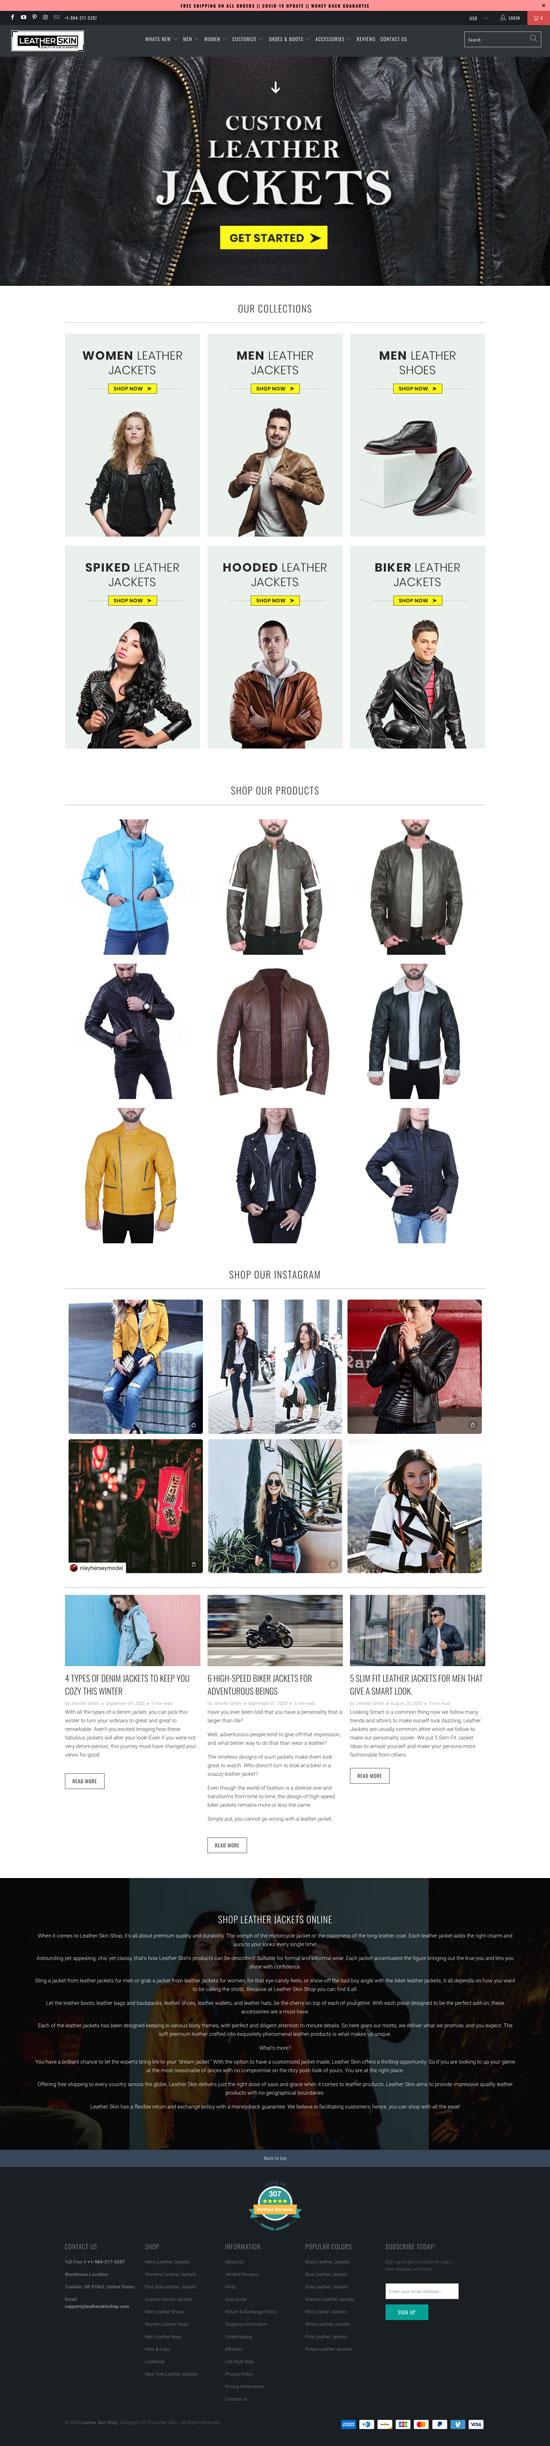 leather jackets website design